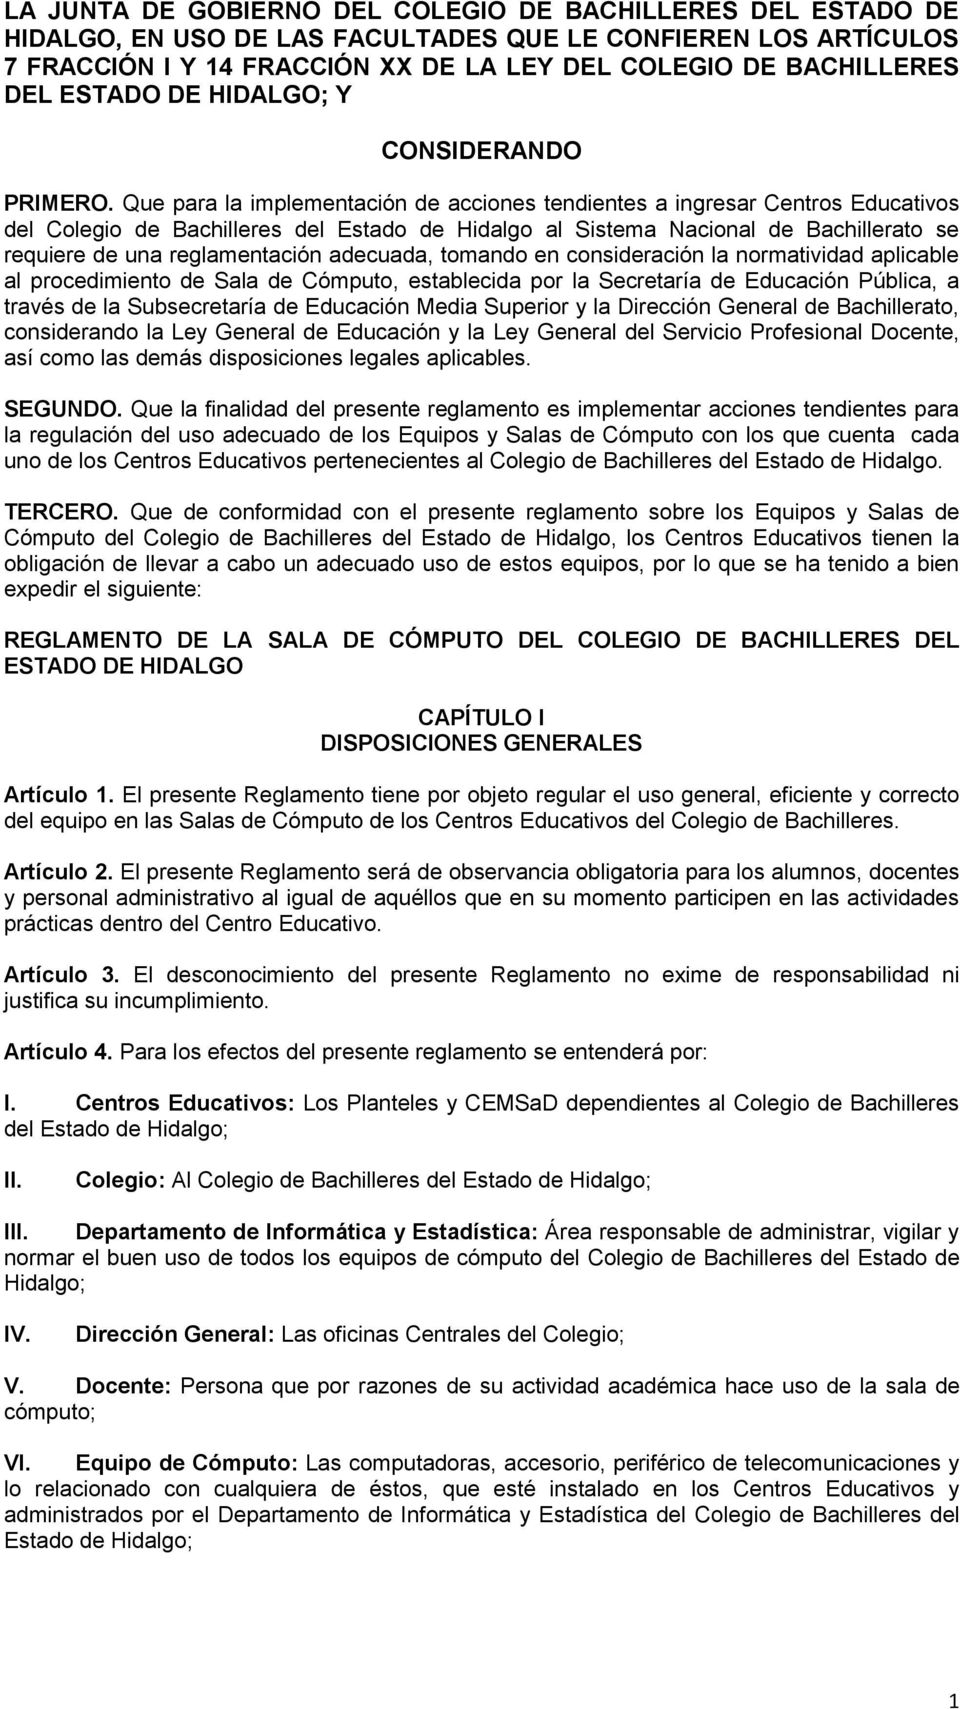 Que para la implementación de acciones tendientes a ingresar Centros Educativos del Colegio de Bachilleres del Estado de Hidalgo al Sistema Nacional de Bachillerato se requiere de una reglamentación